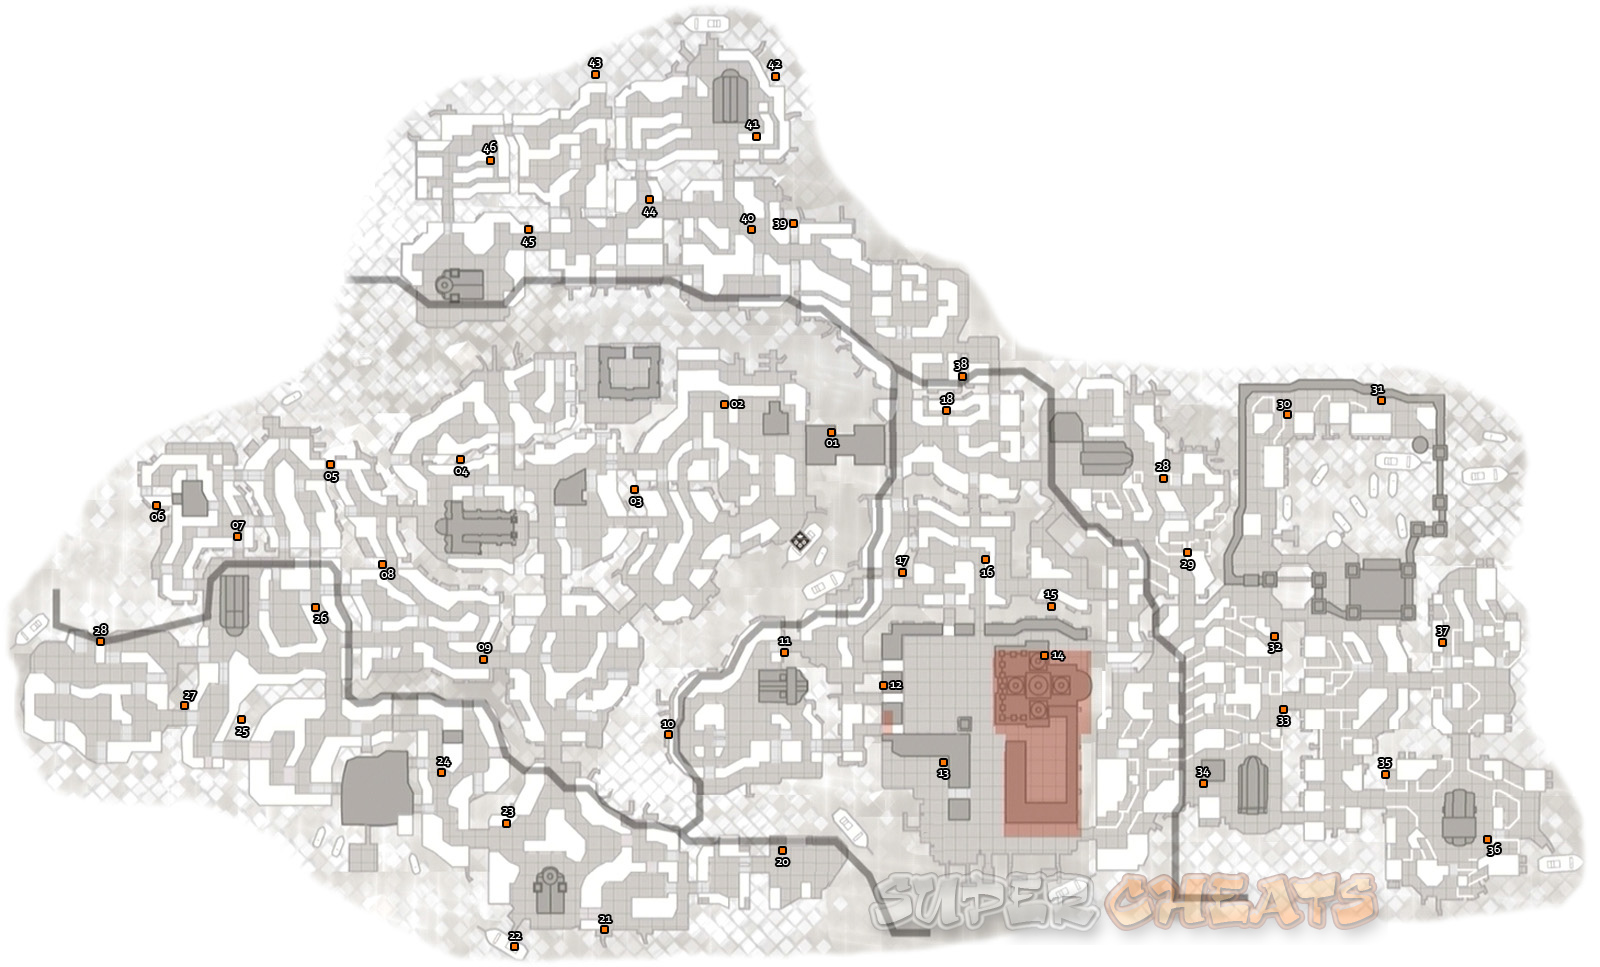 Esconderijo dos Templários #2 - Veneza (Assassin's Creed 2